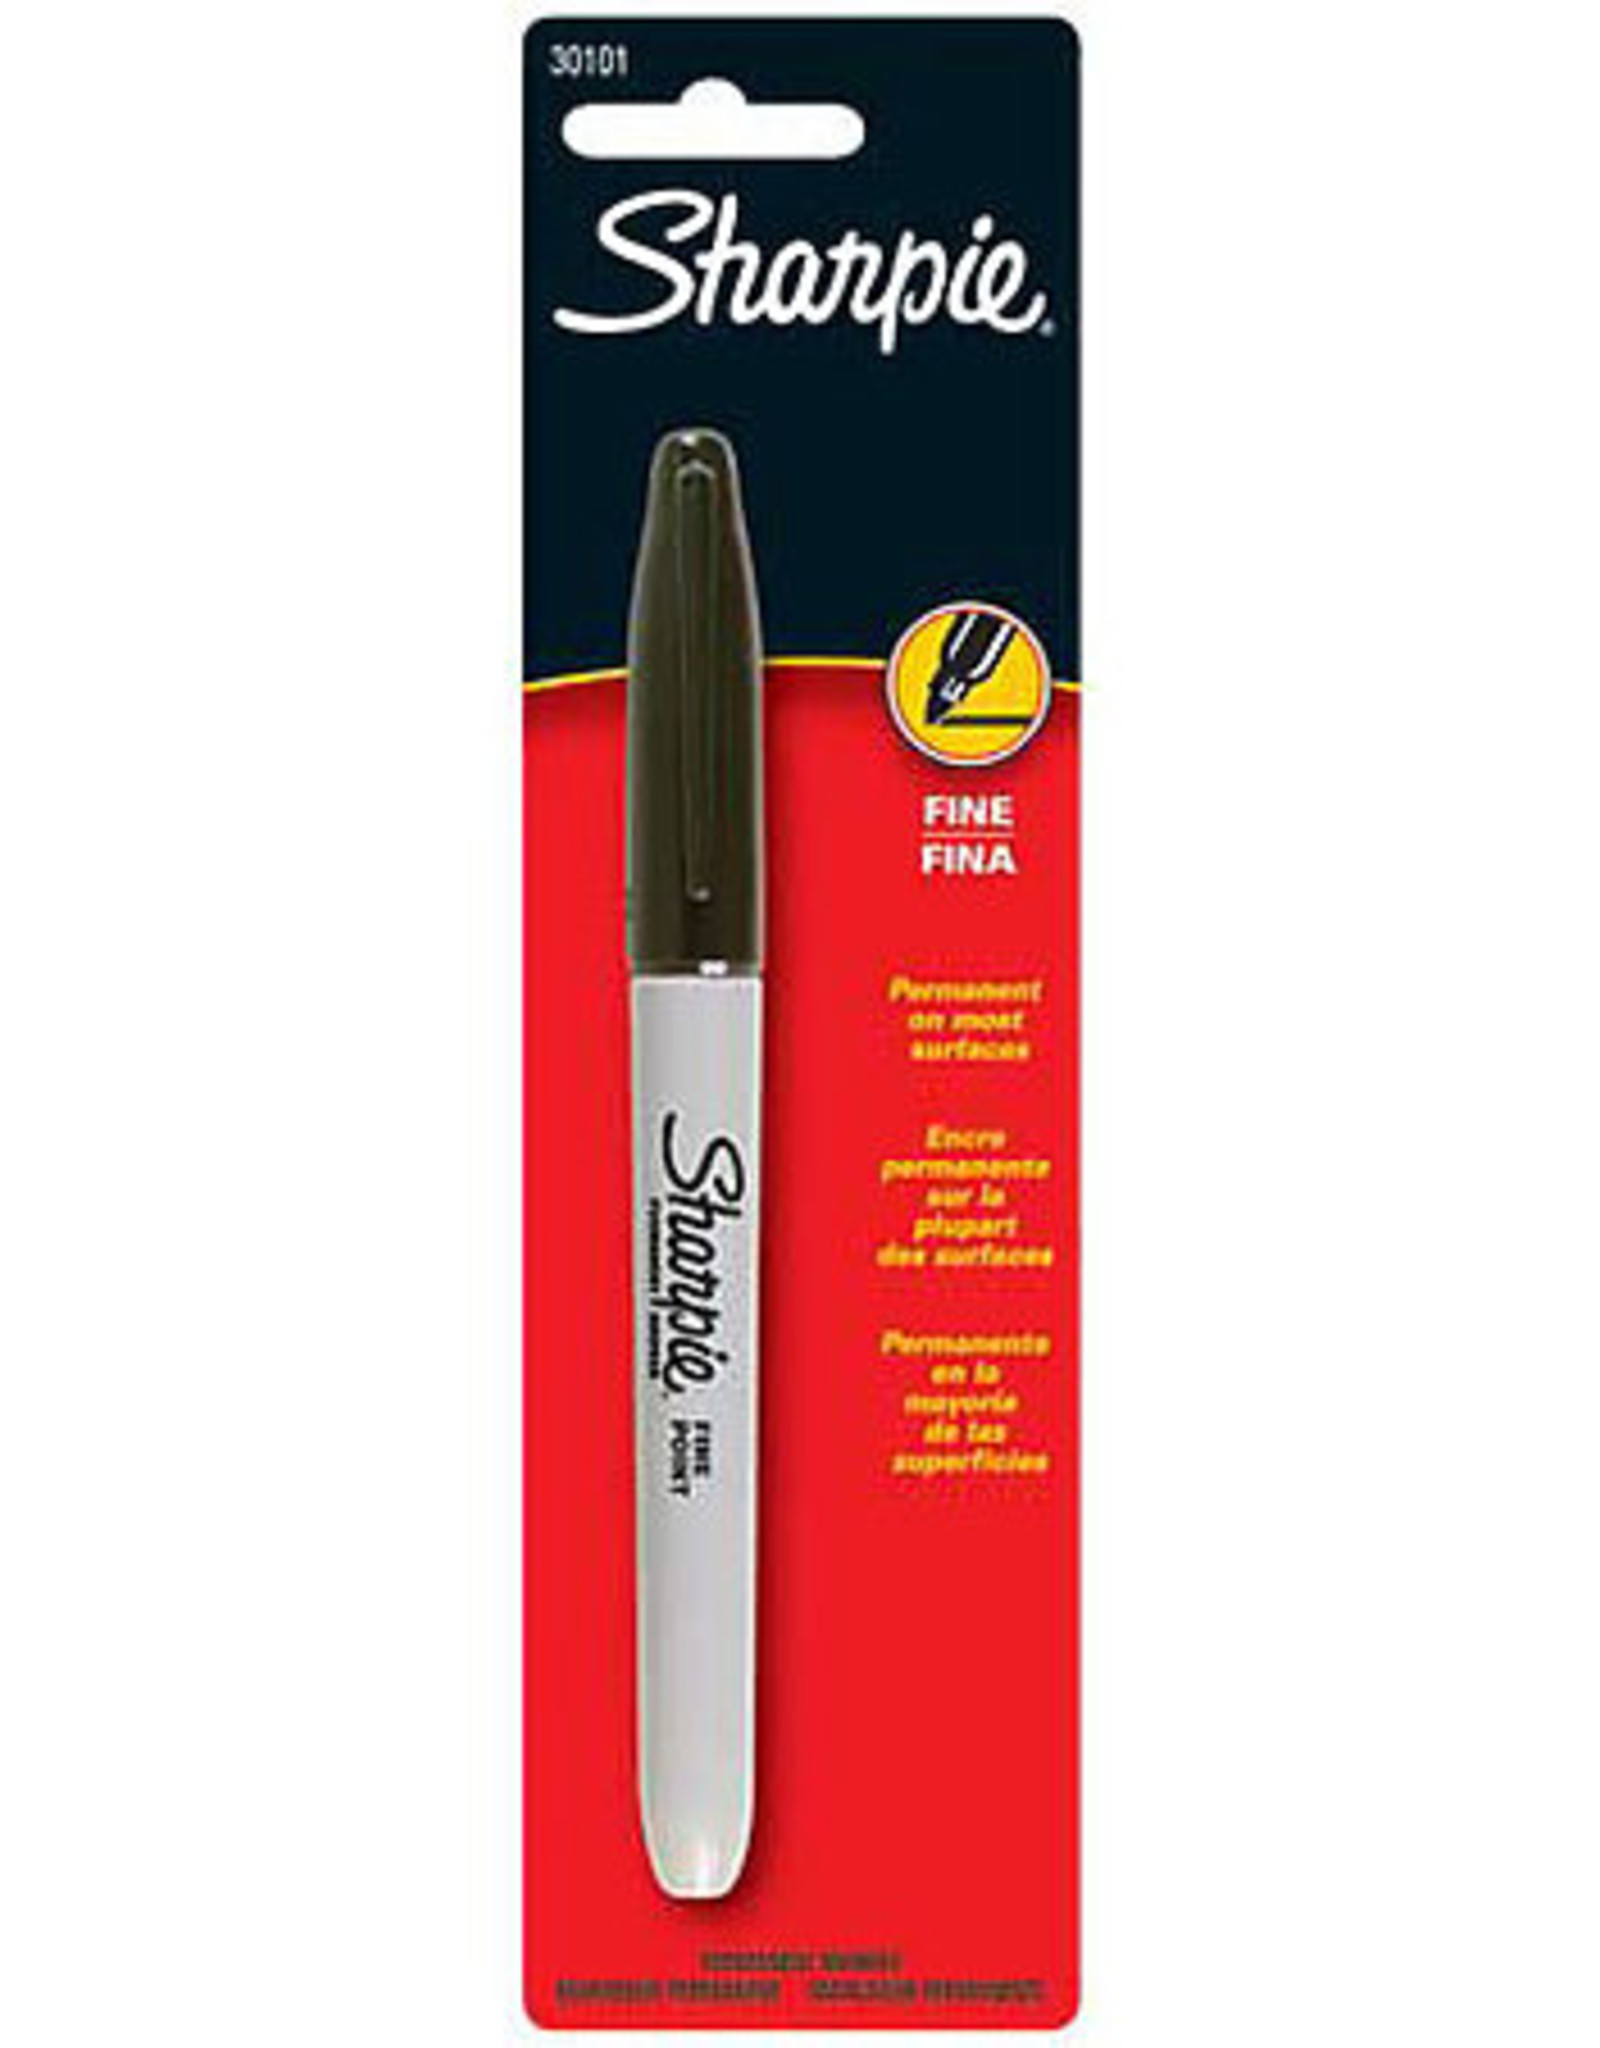 Sharpie Sharpie Markers